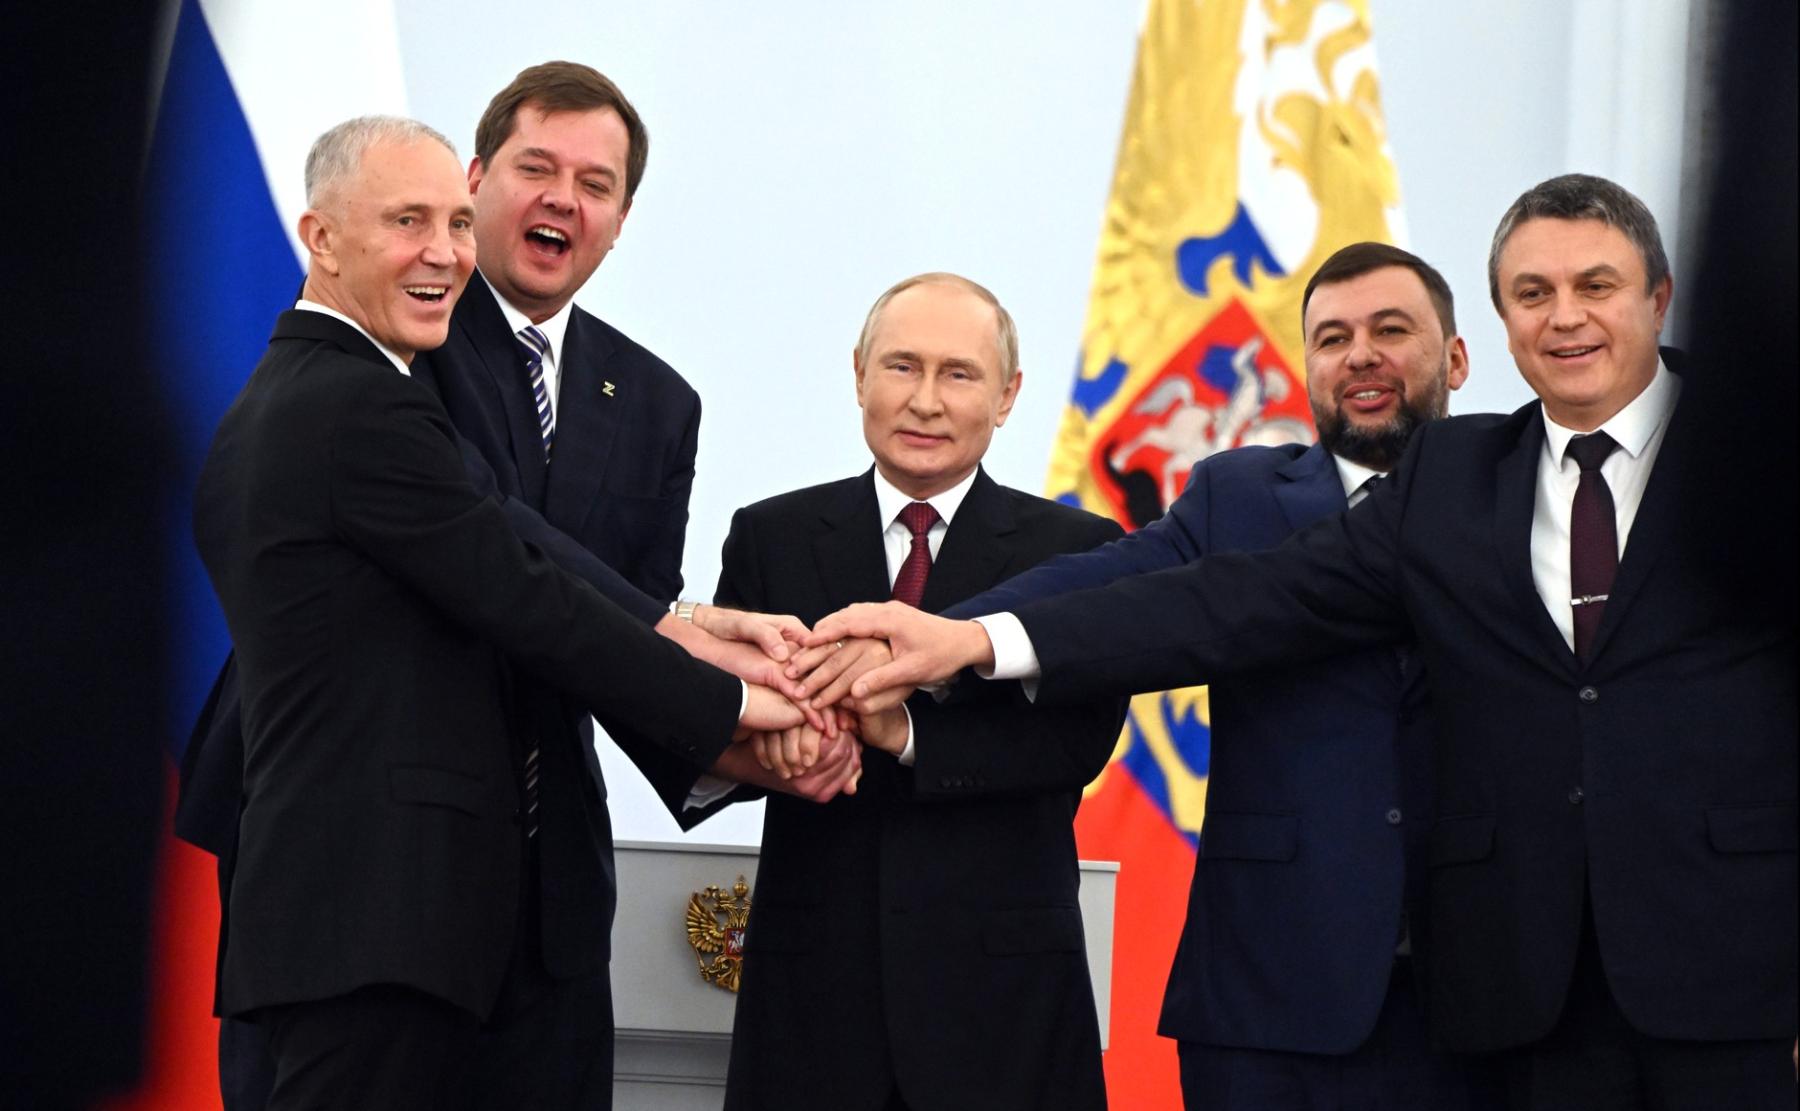 Фото Сколько теперь субъектов в России: Путин подписал договоры о включении новых территорий в состав РФ 2